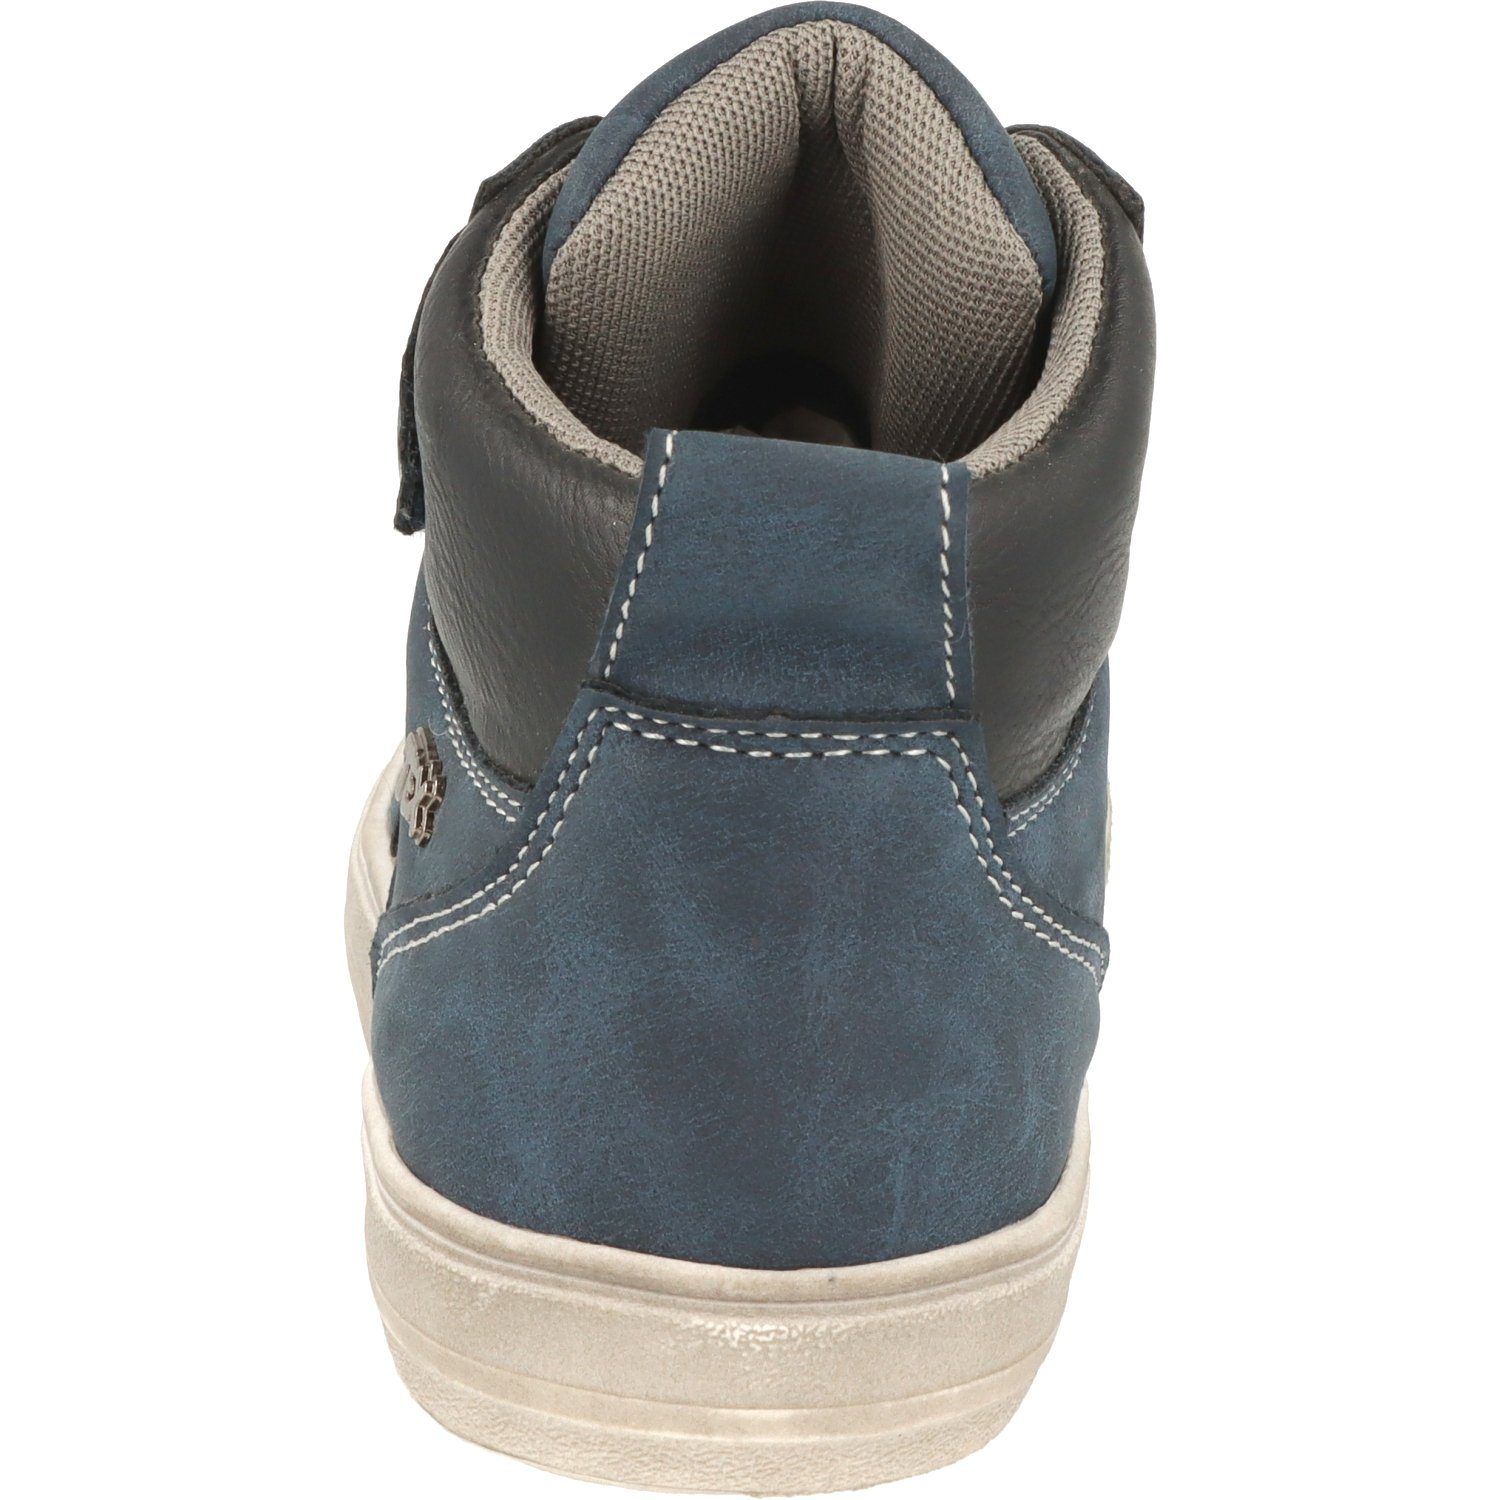 Schuhe Sneaker Jungen Hi-Top Navy Wasserabweisend Schnürschuhe 451-074 Indigo